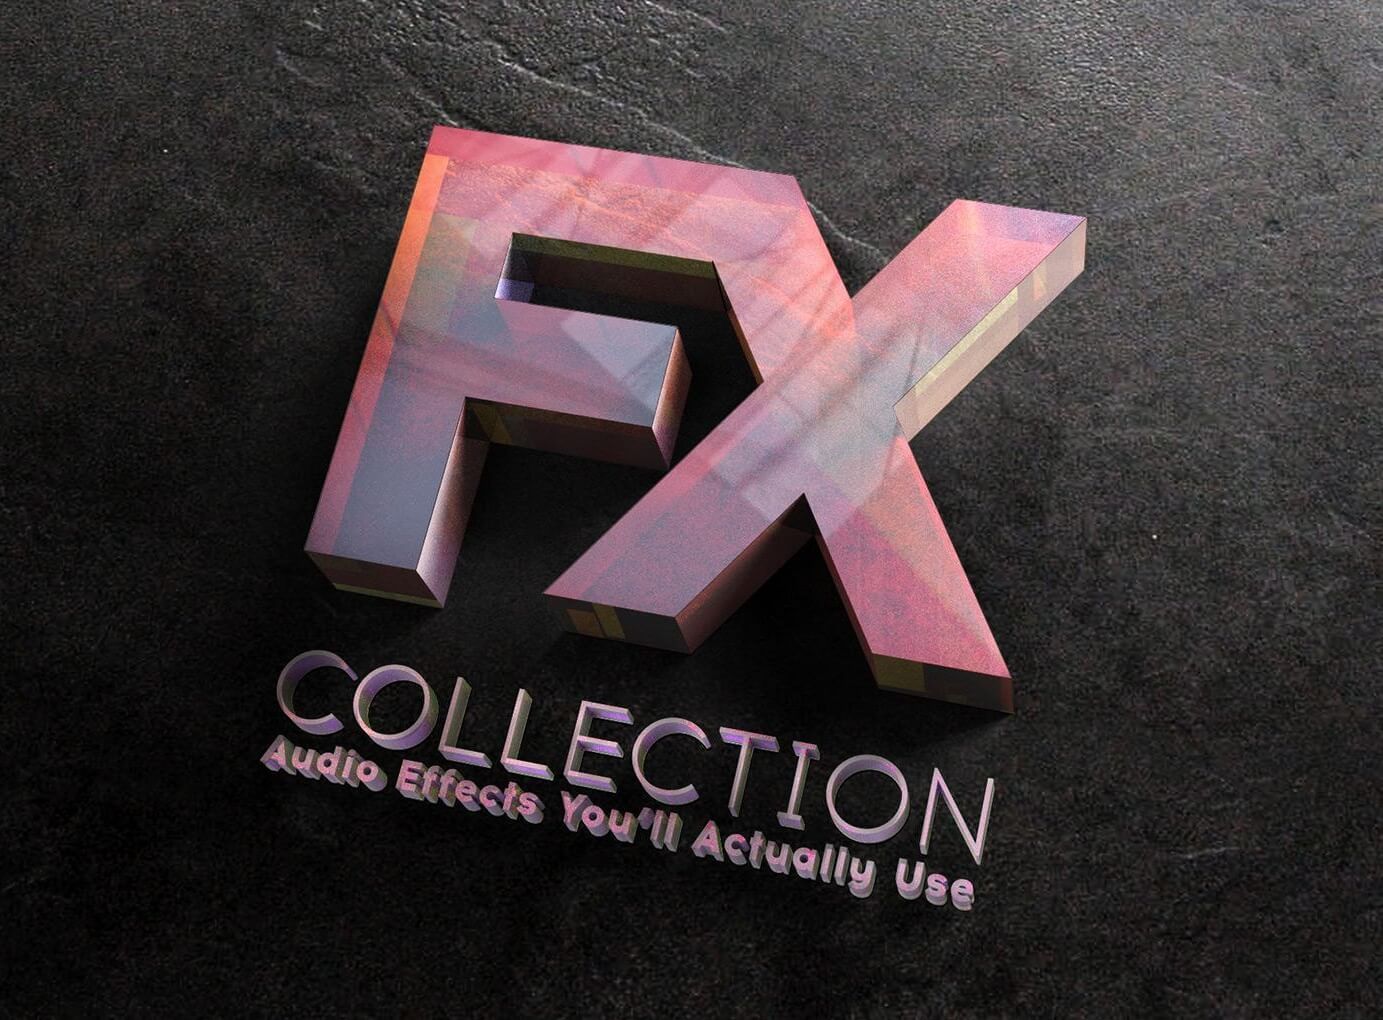 Fx collection. Arturia FX collection. Arturia FX collection 2. Arturia логотип. Arturia FX collection 3.